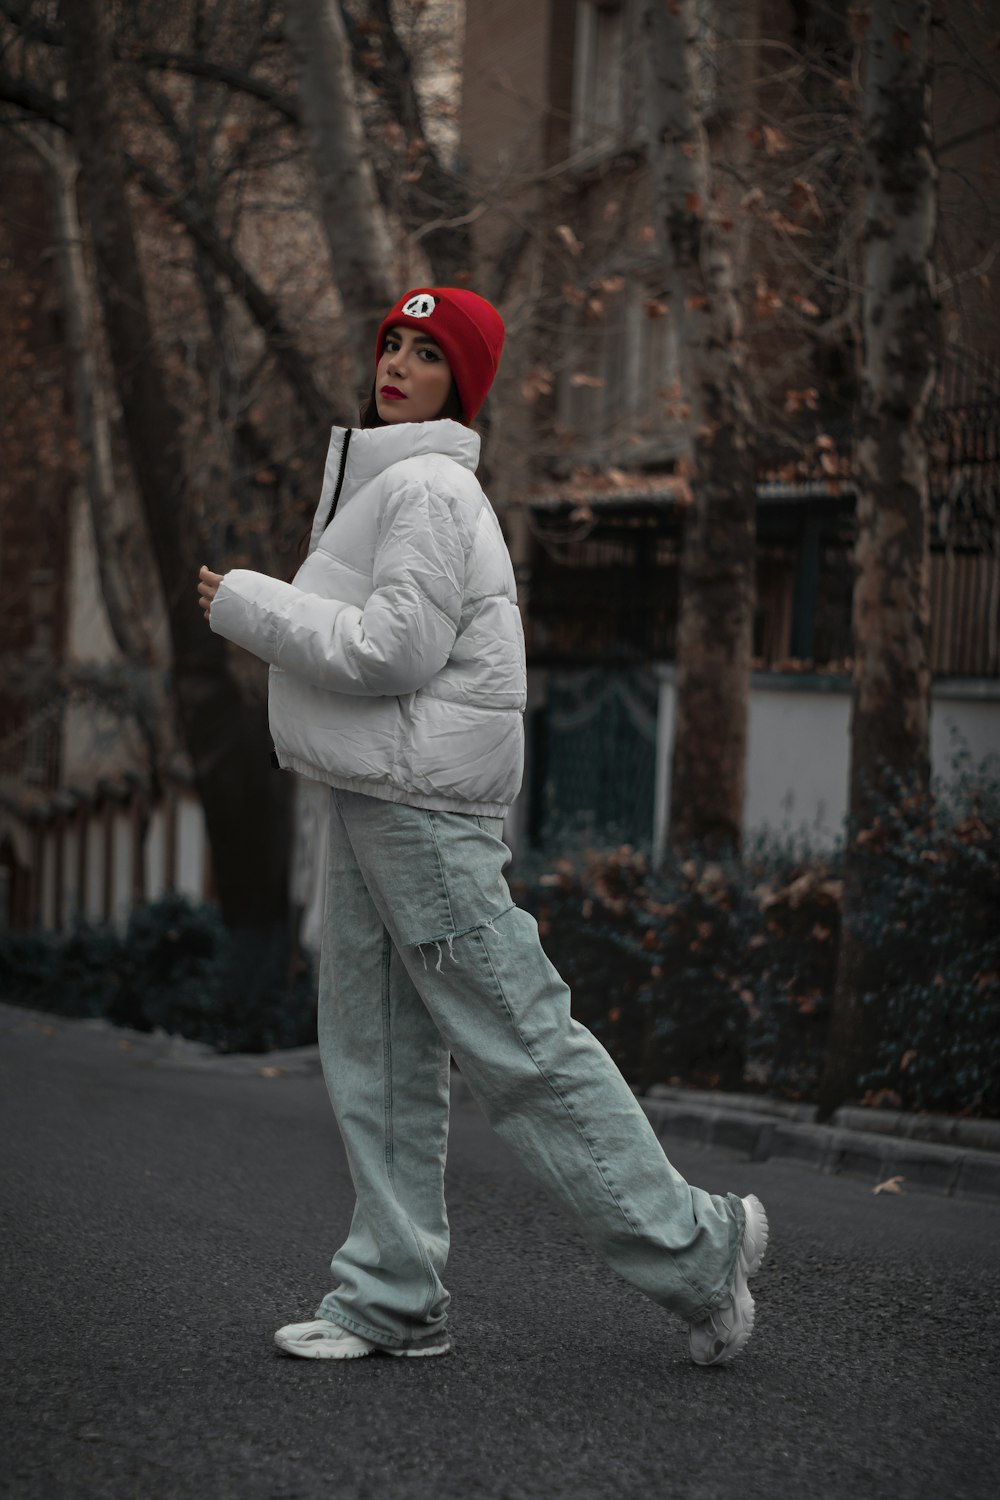 Una persona che cammina lungo una strada con un cappello rosso